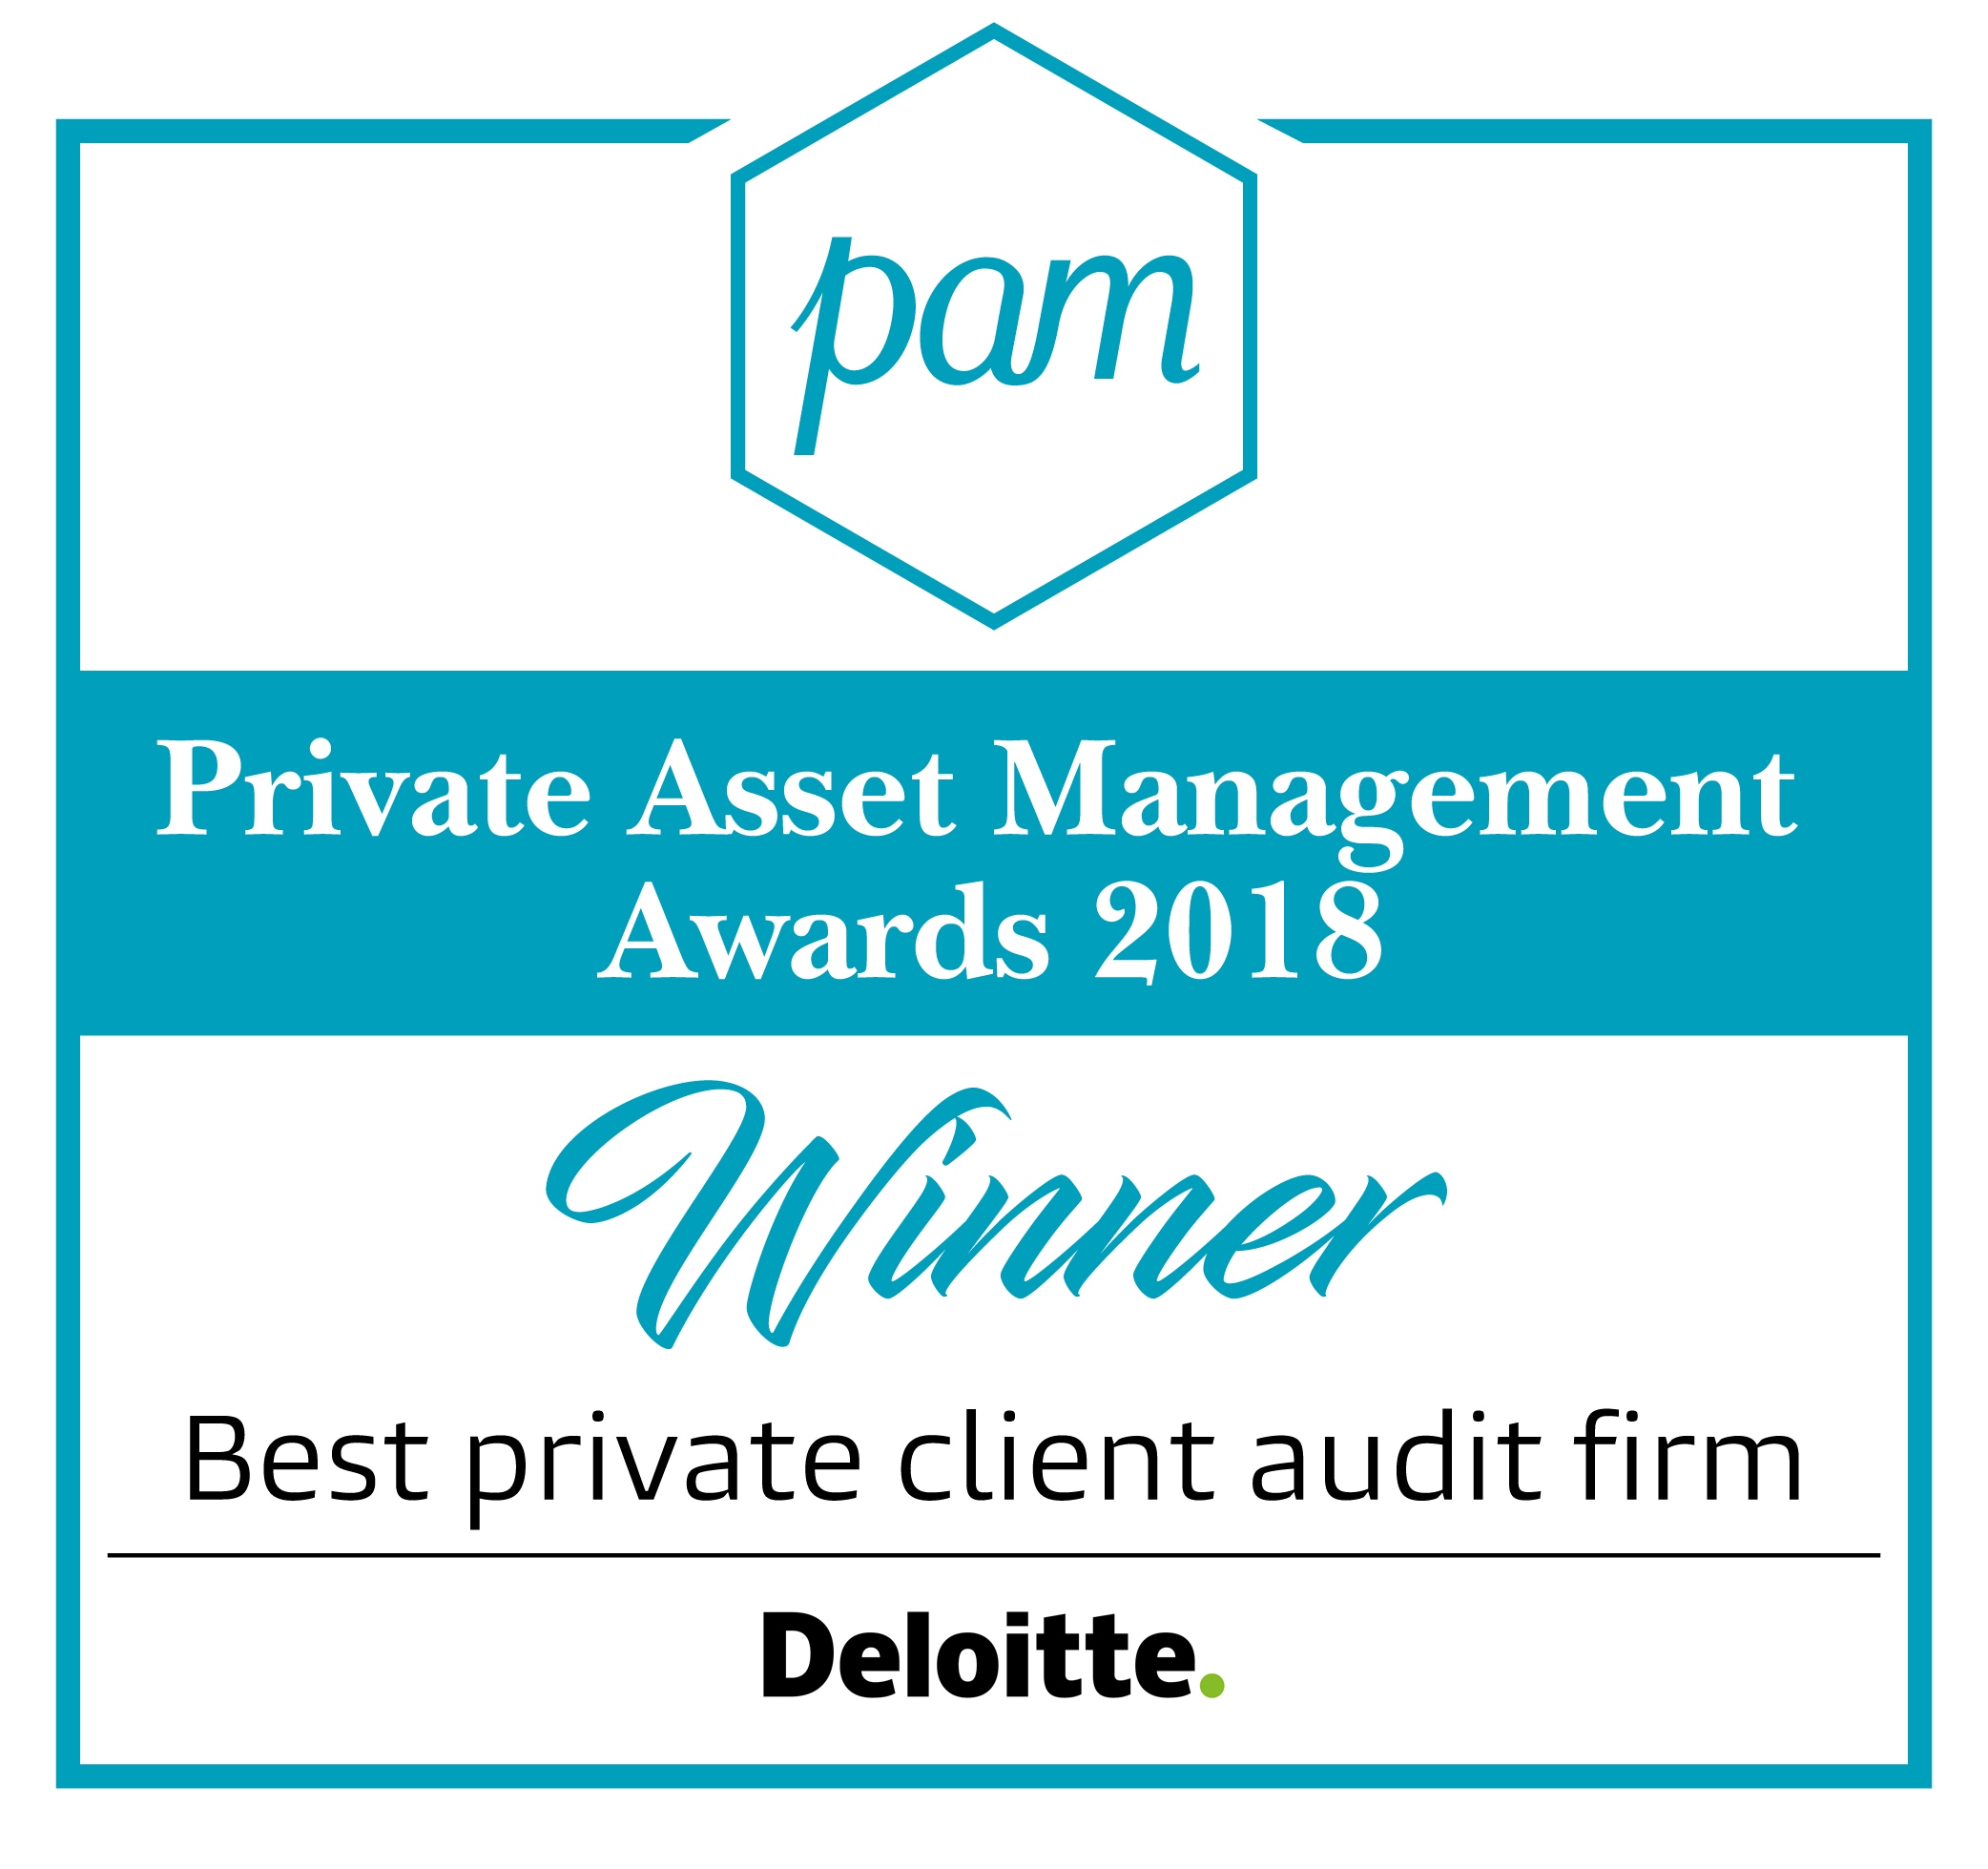 Deloitte wins Best Private Client Audit Firm